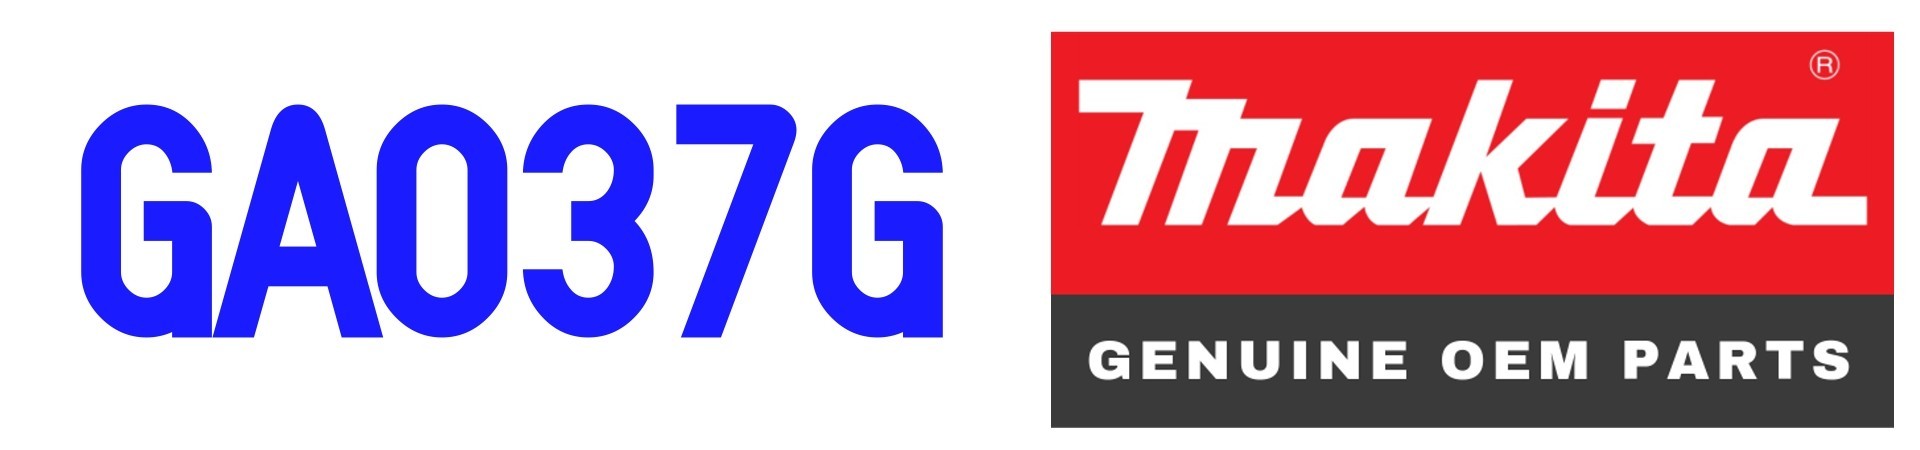 GA037G